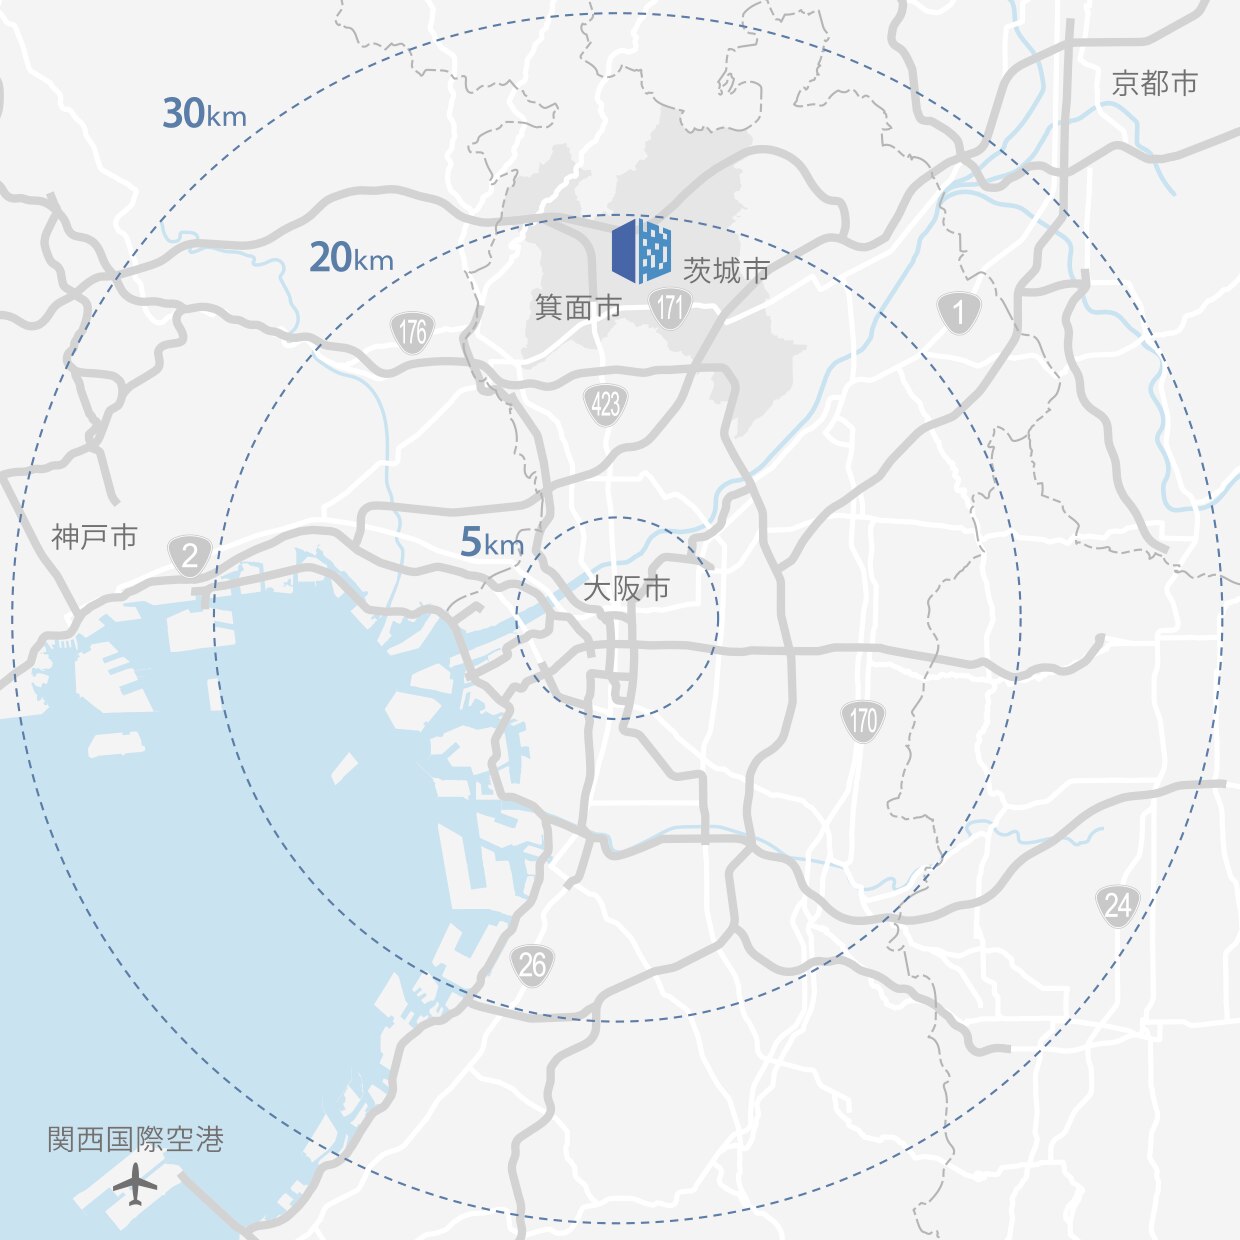 関西マップ